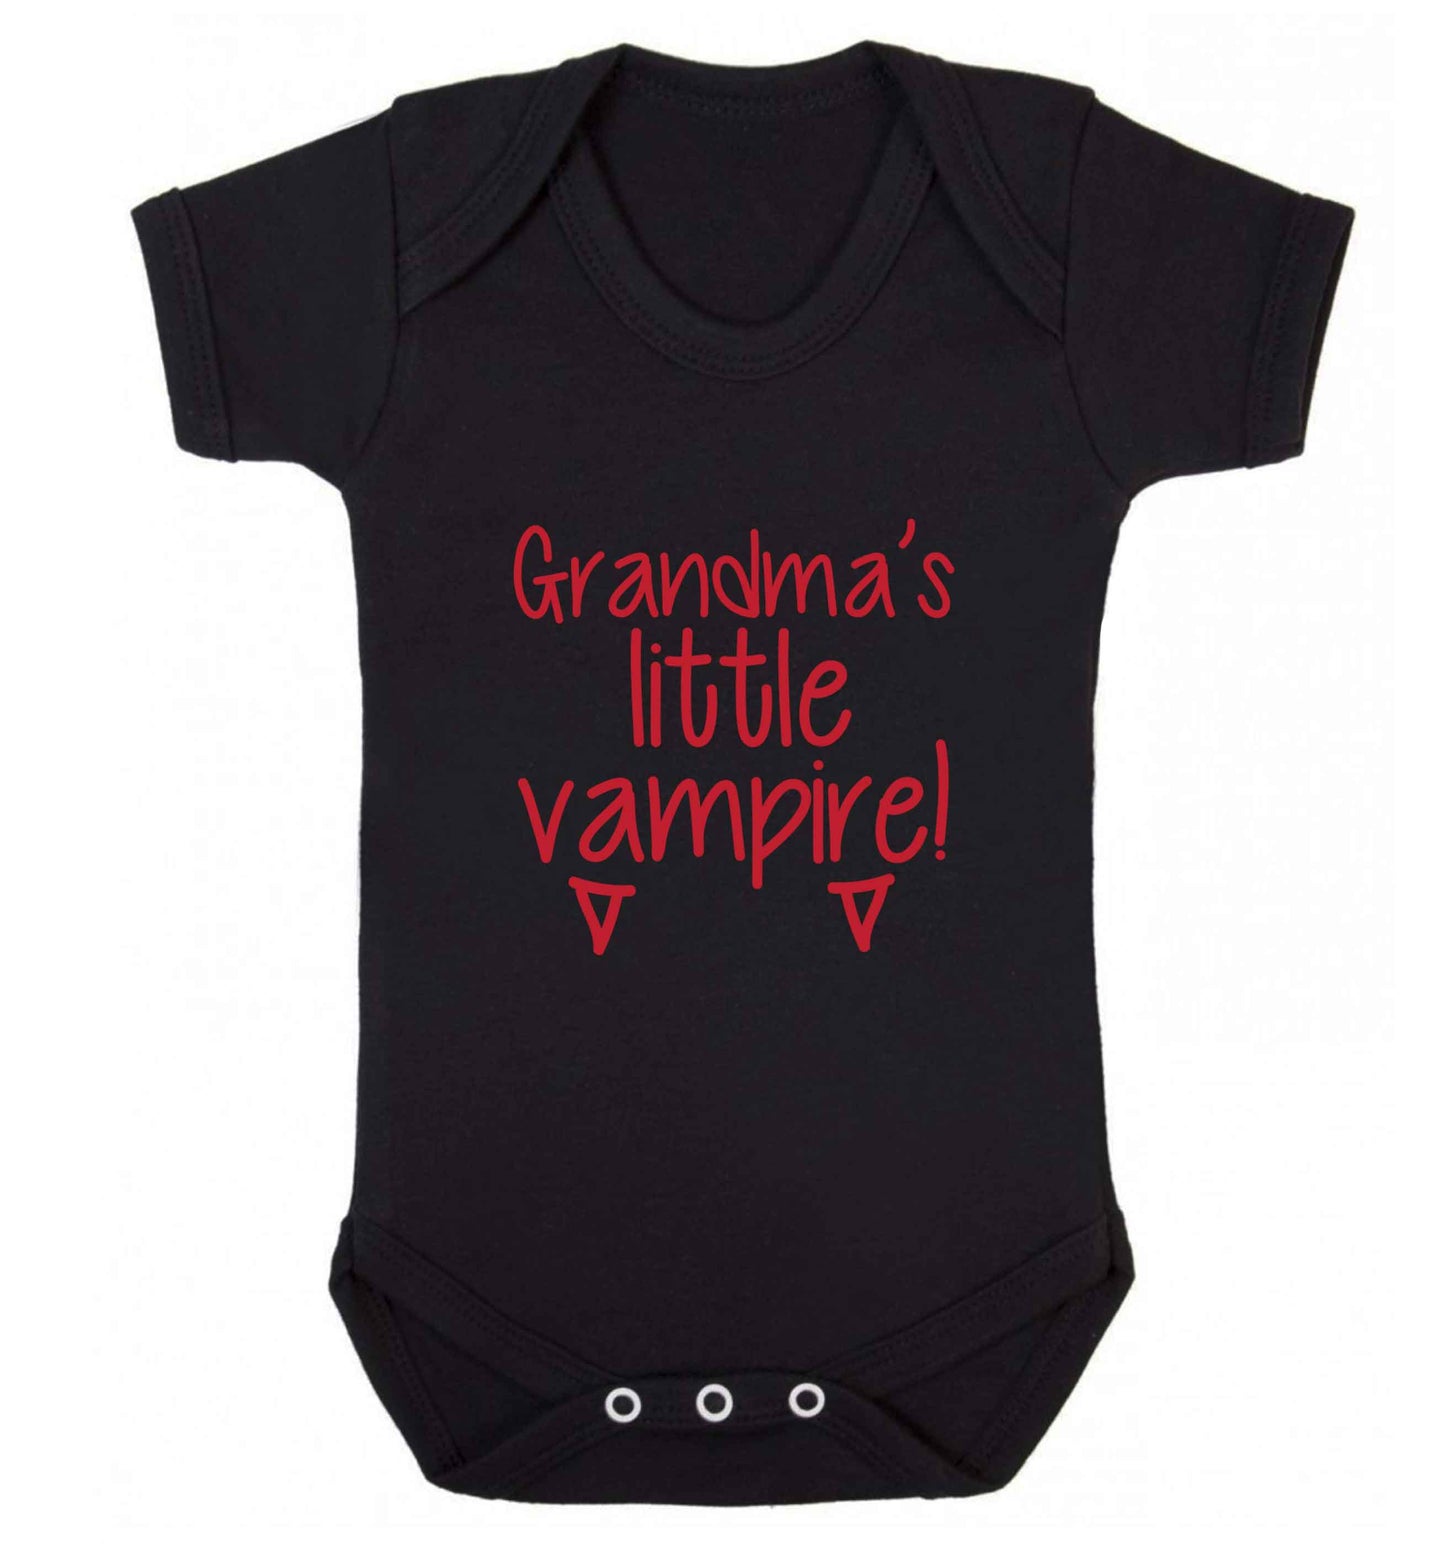 Grandma's little vampire baby vest black 18-24 months